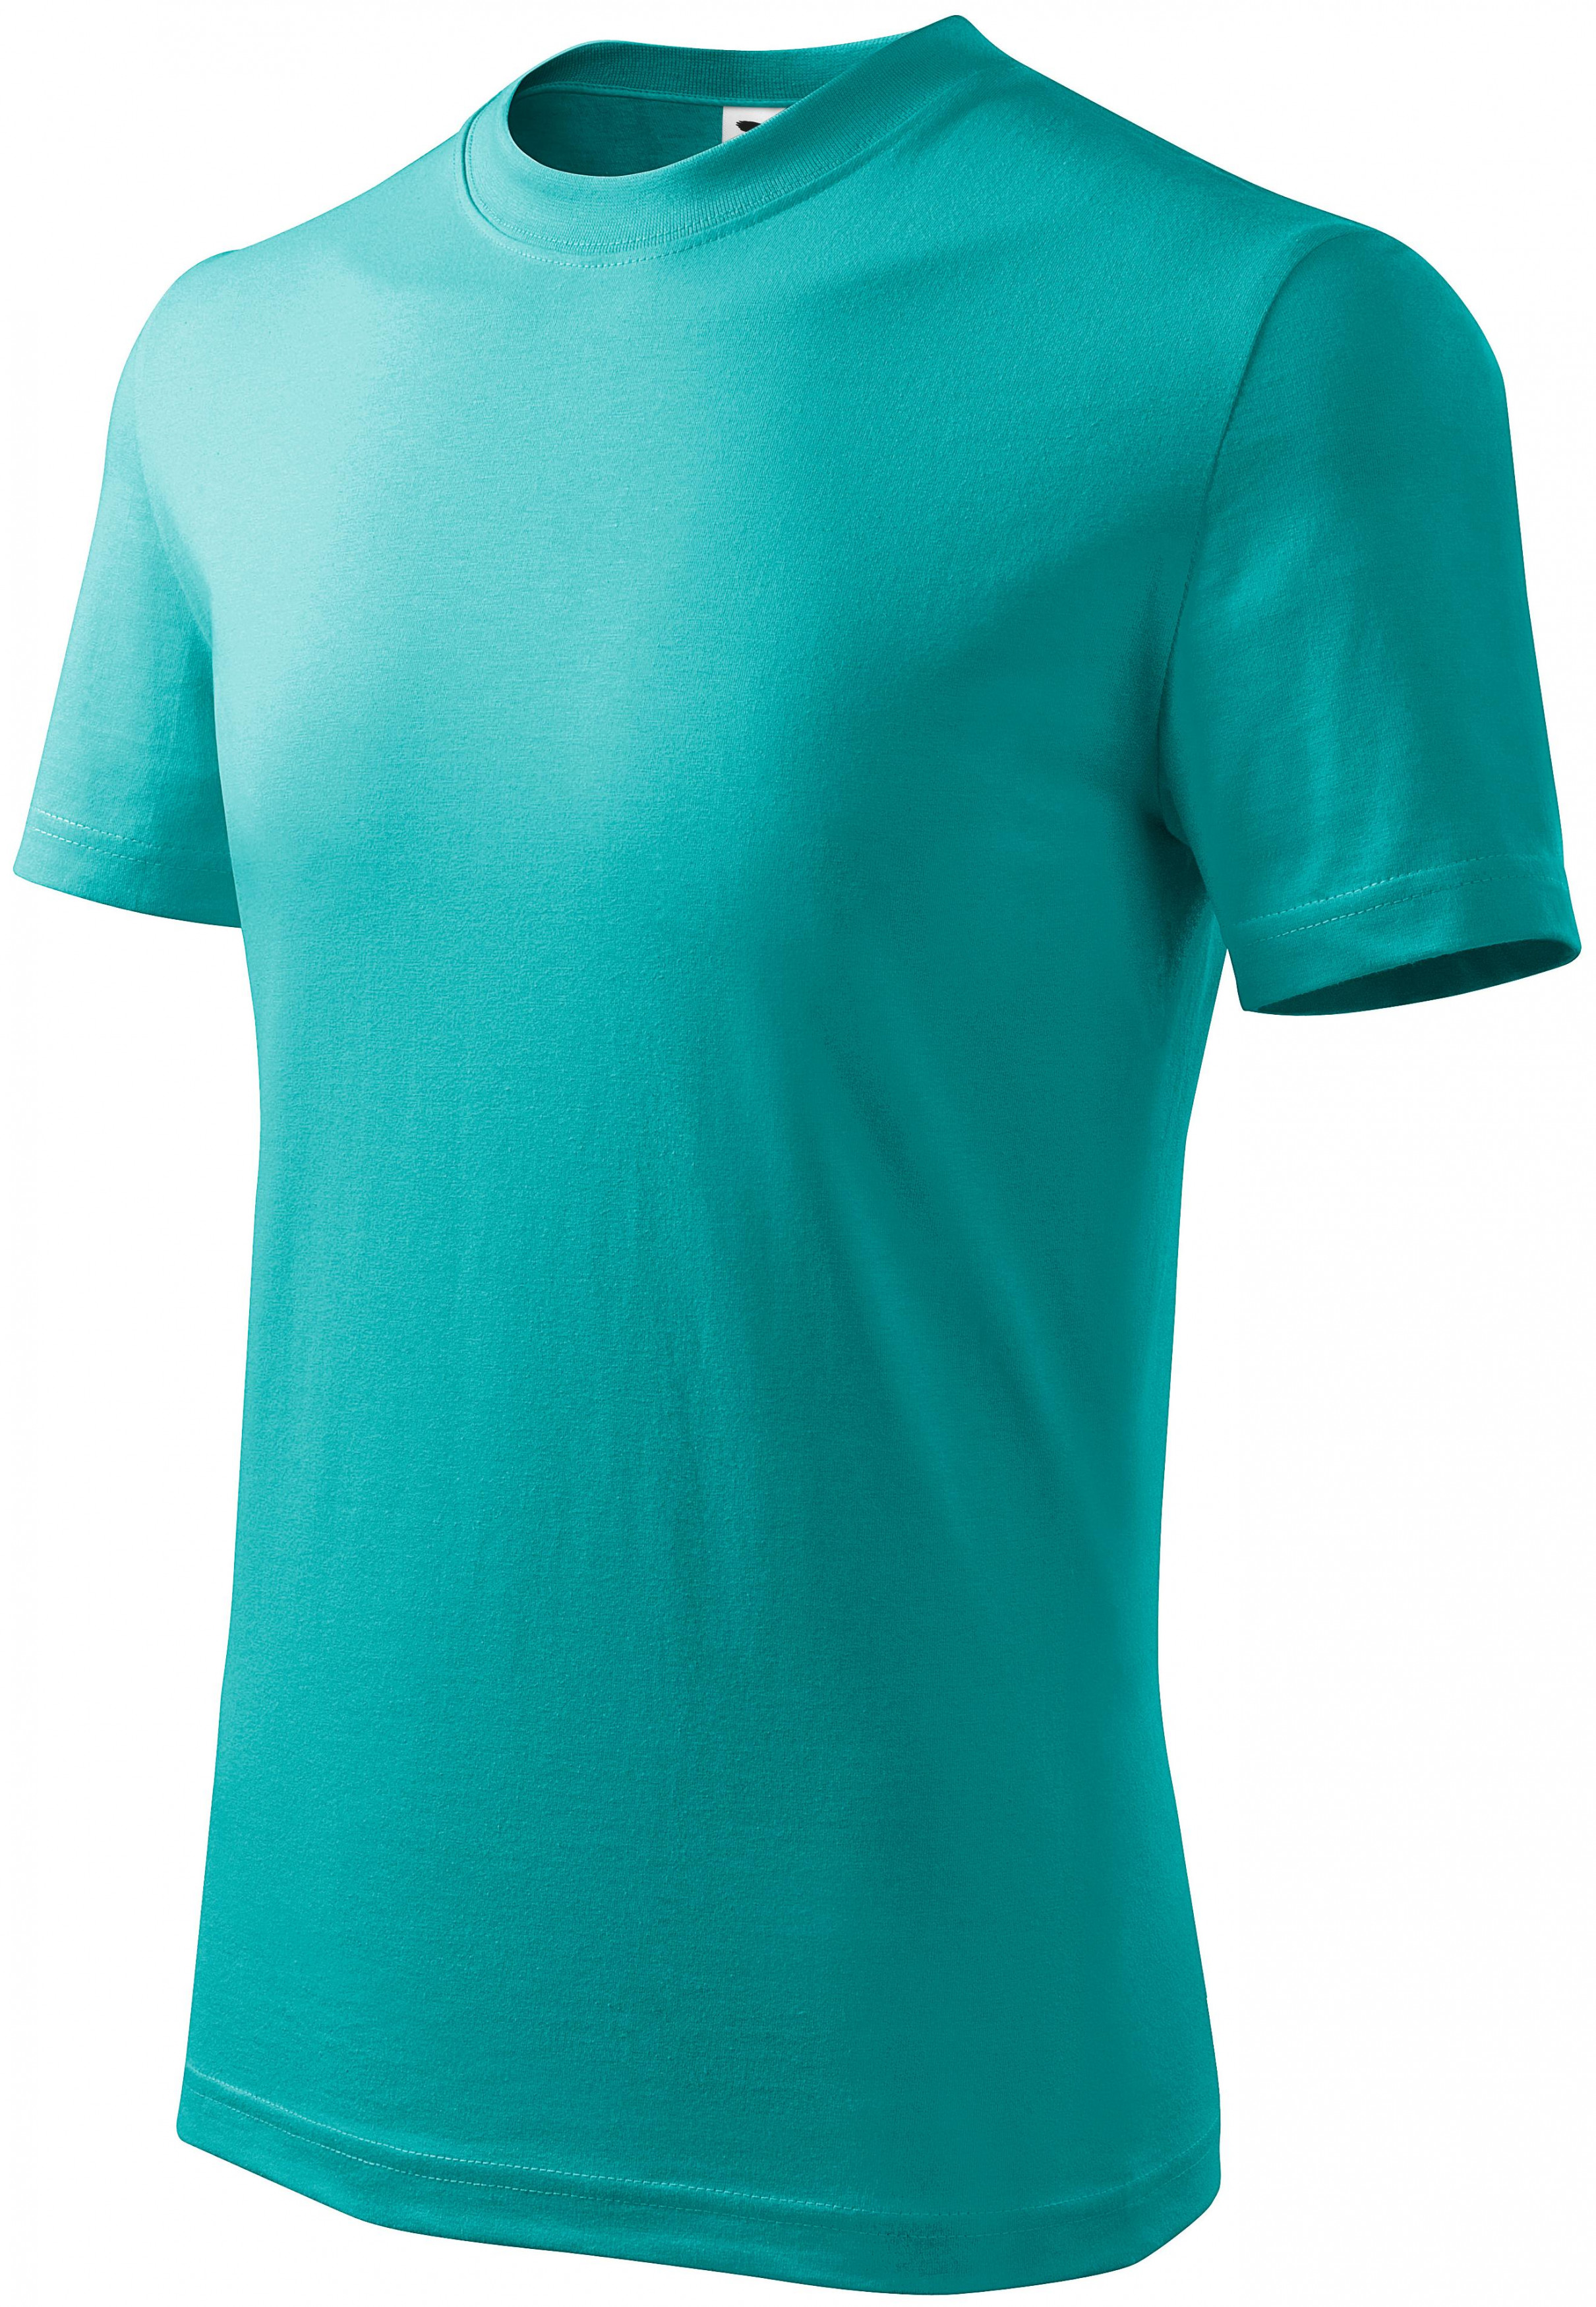 Detské tričko jednoduché, smaragdovozelená, 146cm / 10rokov